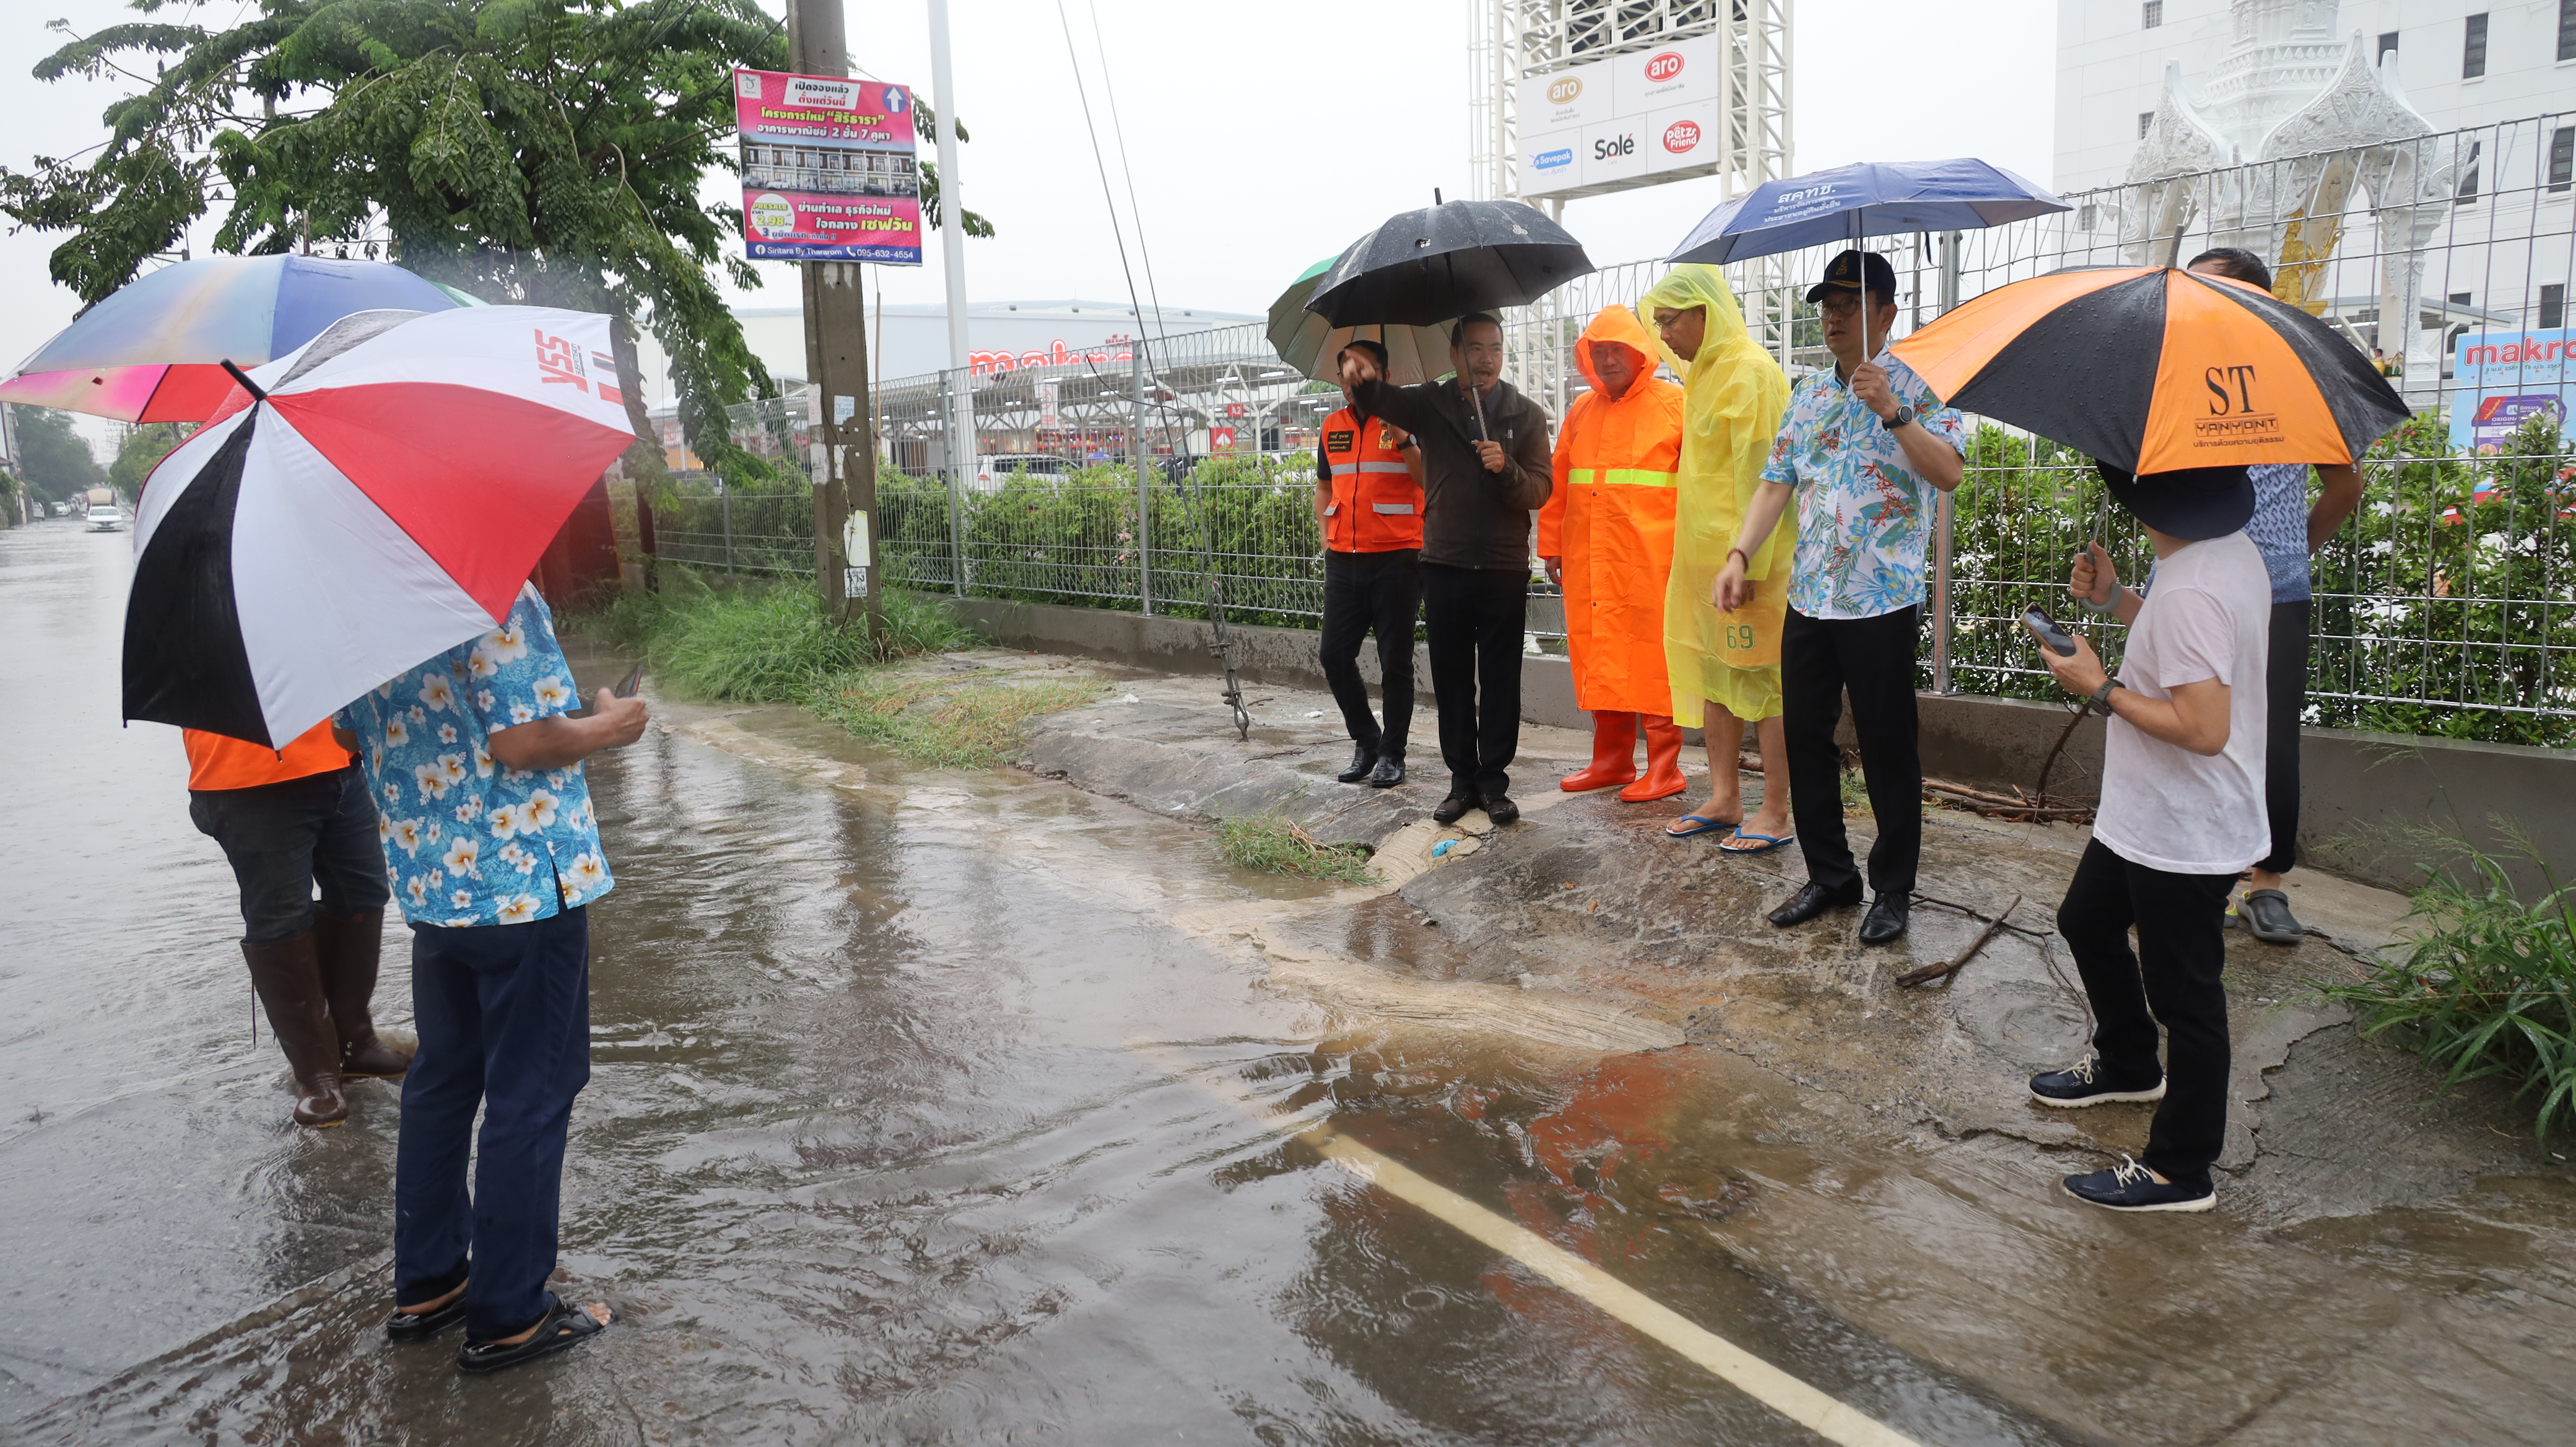 ผู้ว่าโคราชลุยฝน เช็คการระบายน้ำบนถนนมิตรภาพ หน้าตลาดเซฟวัน  รับมือน้ำท่วม จากพายุฤดูร้อน 